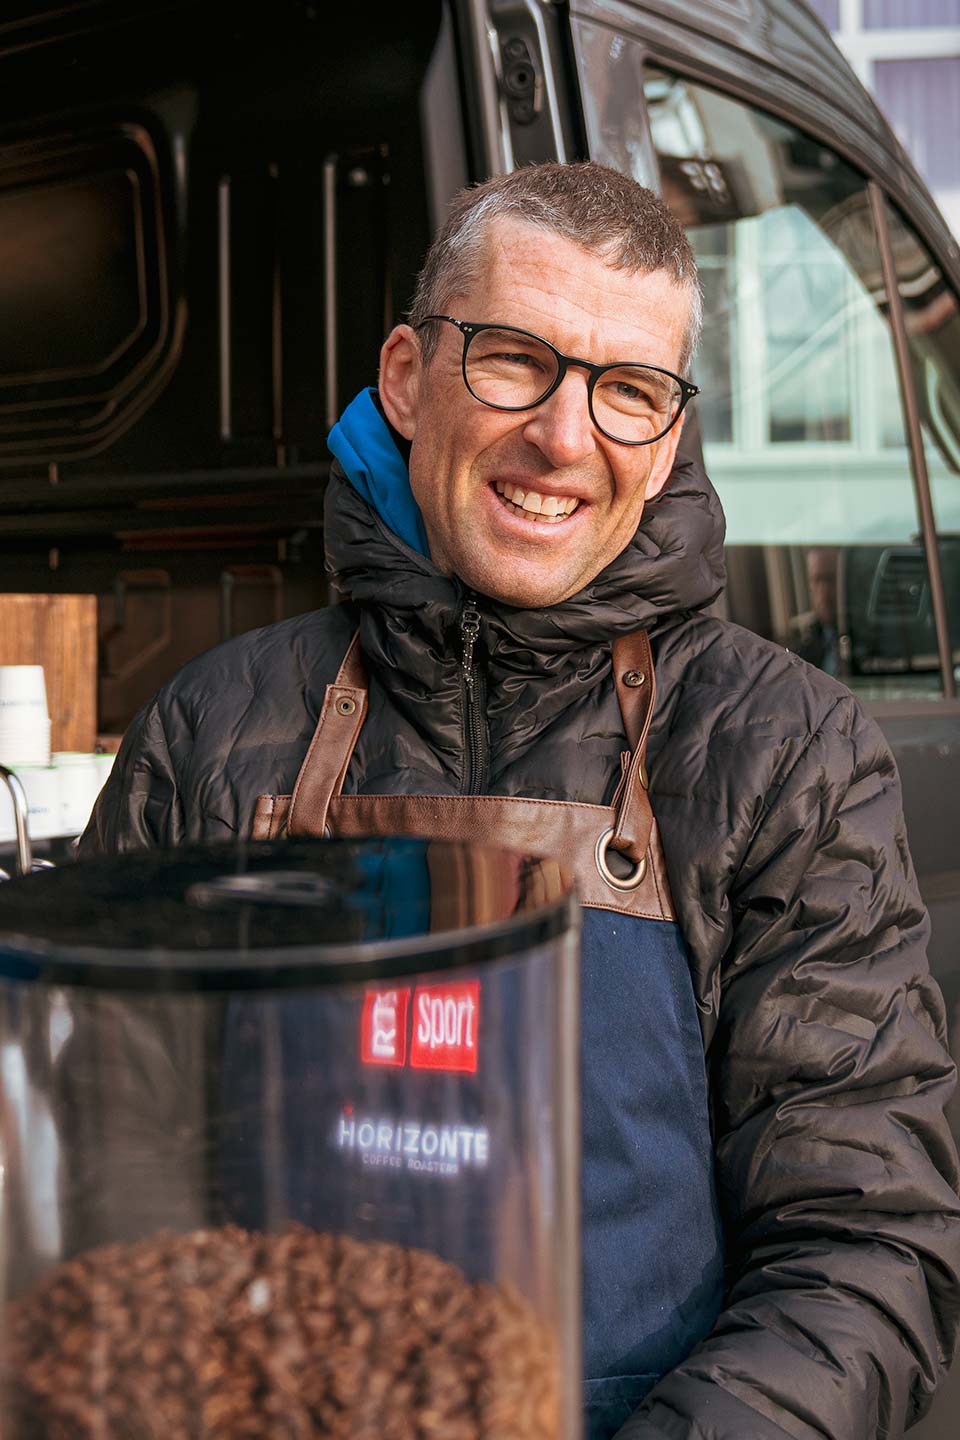 HORIZONTE COFFEE ROASTERS Christoph Sauser